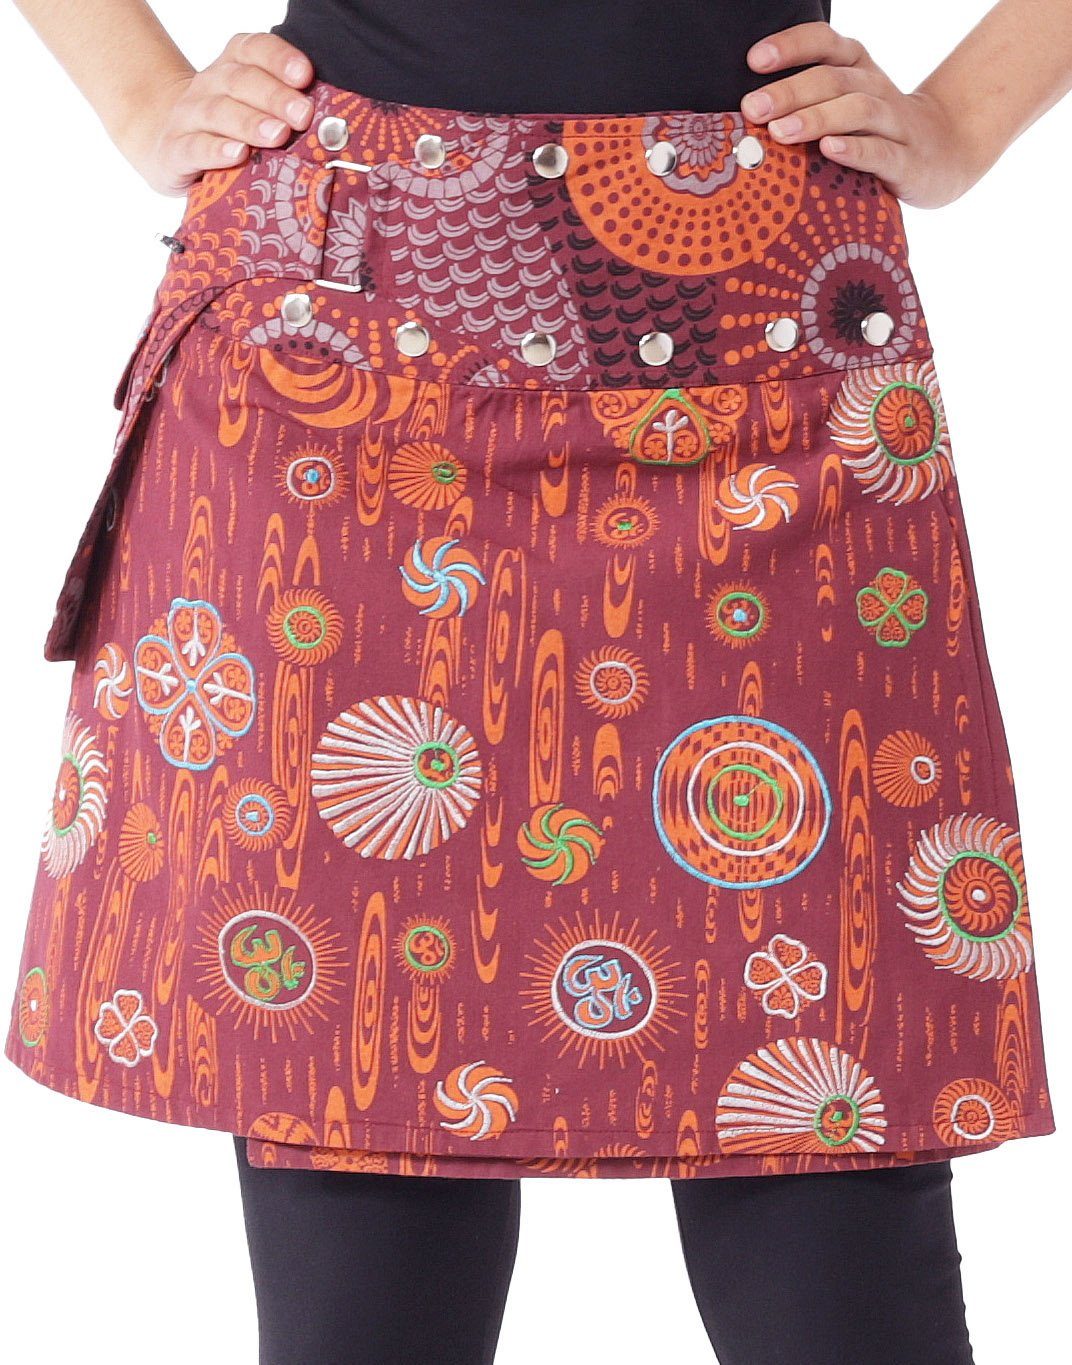 PUREWONDER Wickelrock Damen Rock mit Tasche und Stickerei sk184 Baumwolle Einheitsgröße